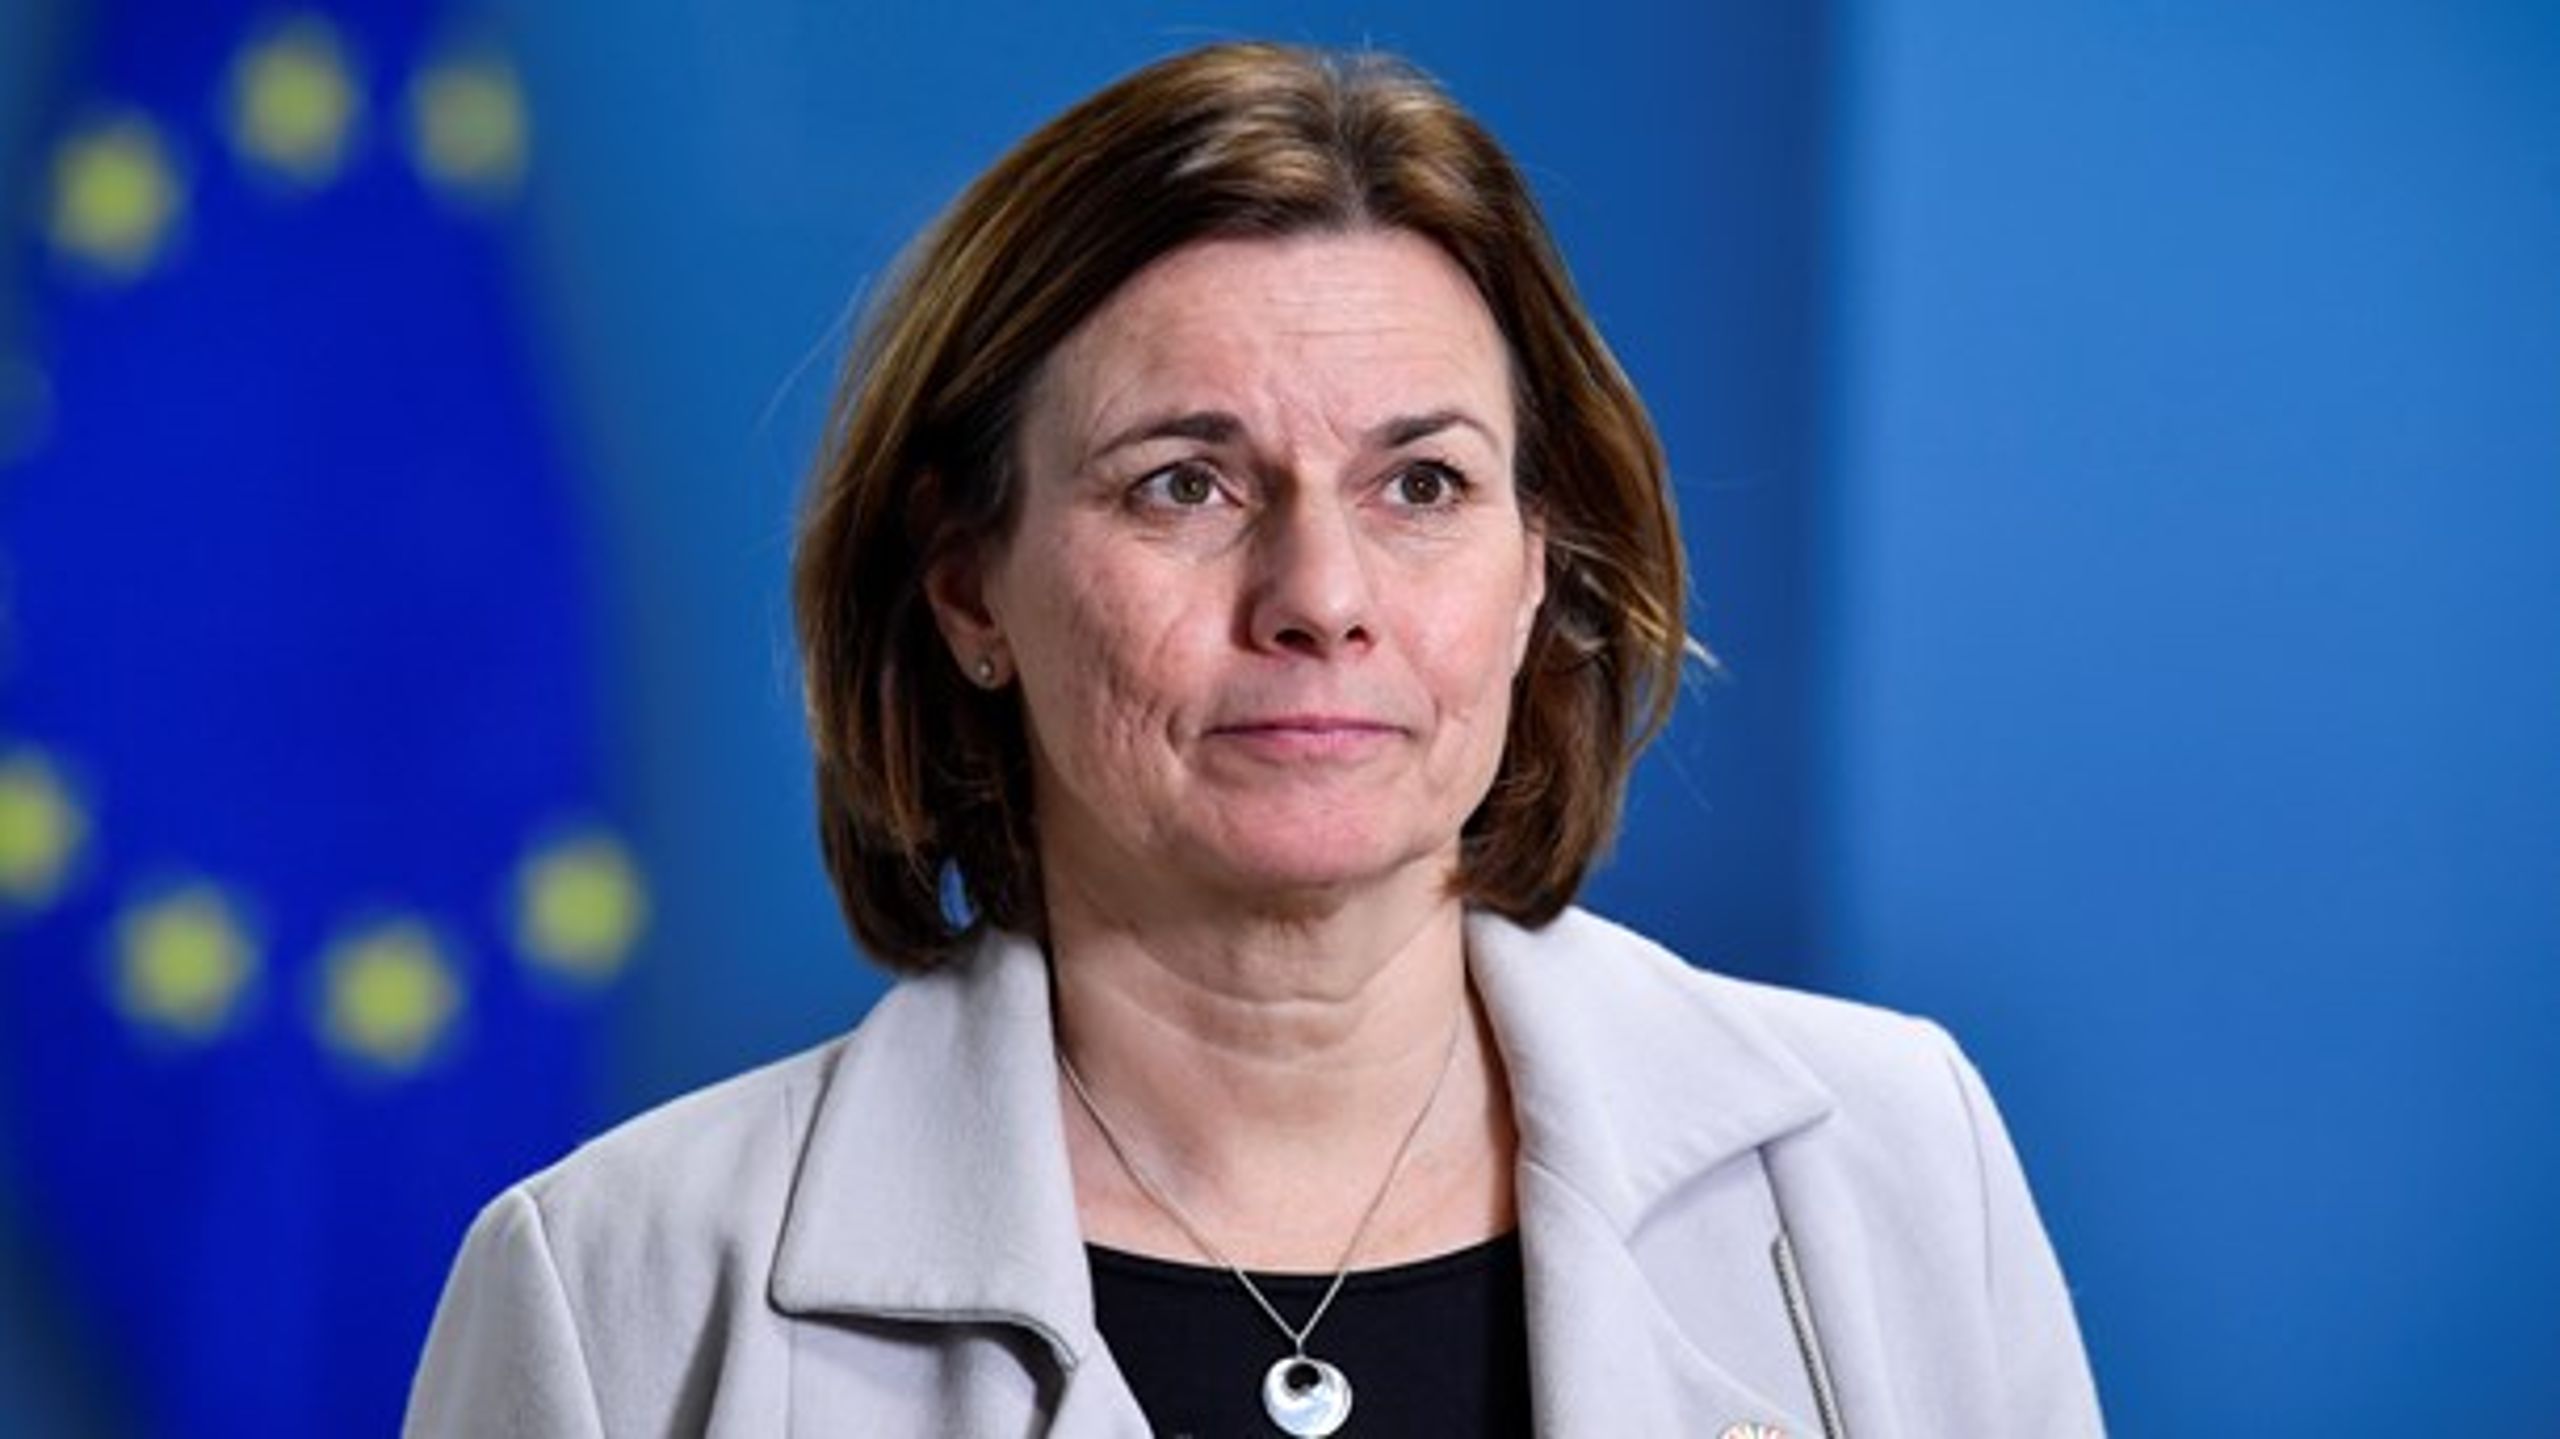 Isabella Lövin är på väg att lämna regeringen, men det är ingen ursäkt för att inte svara på en interpellation, anser riksdagsledamot Alexandra Anstrell (M).